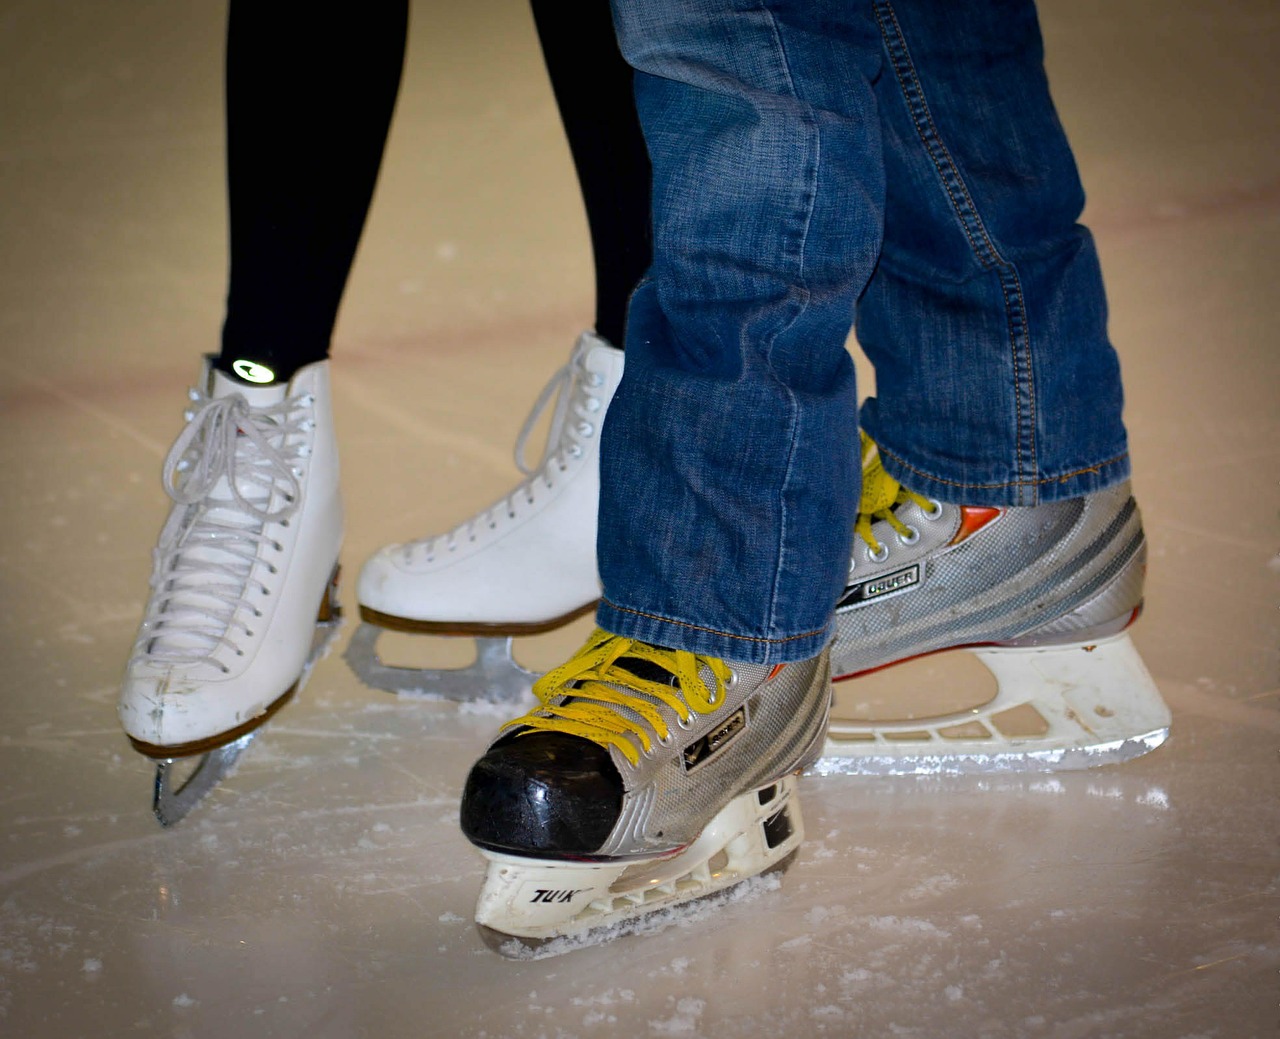 Co dla początkującego – łyżwy figurowe czy łyżwy hokejowe?